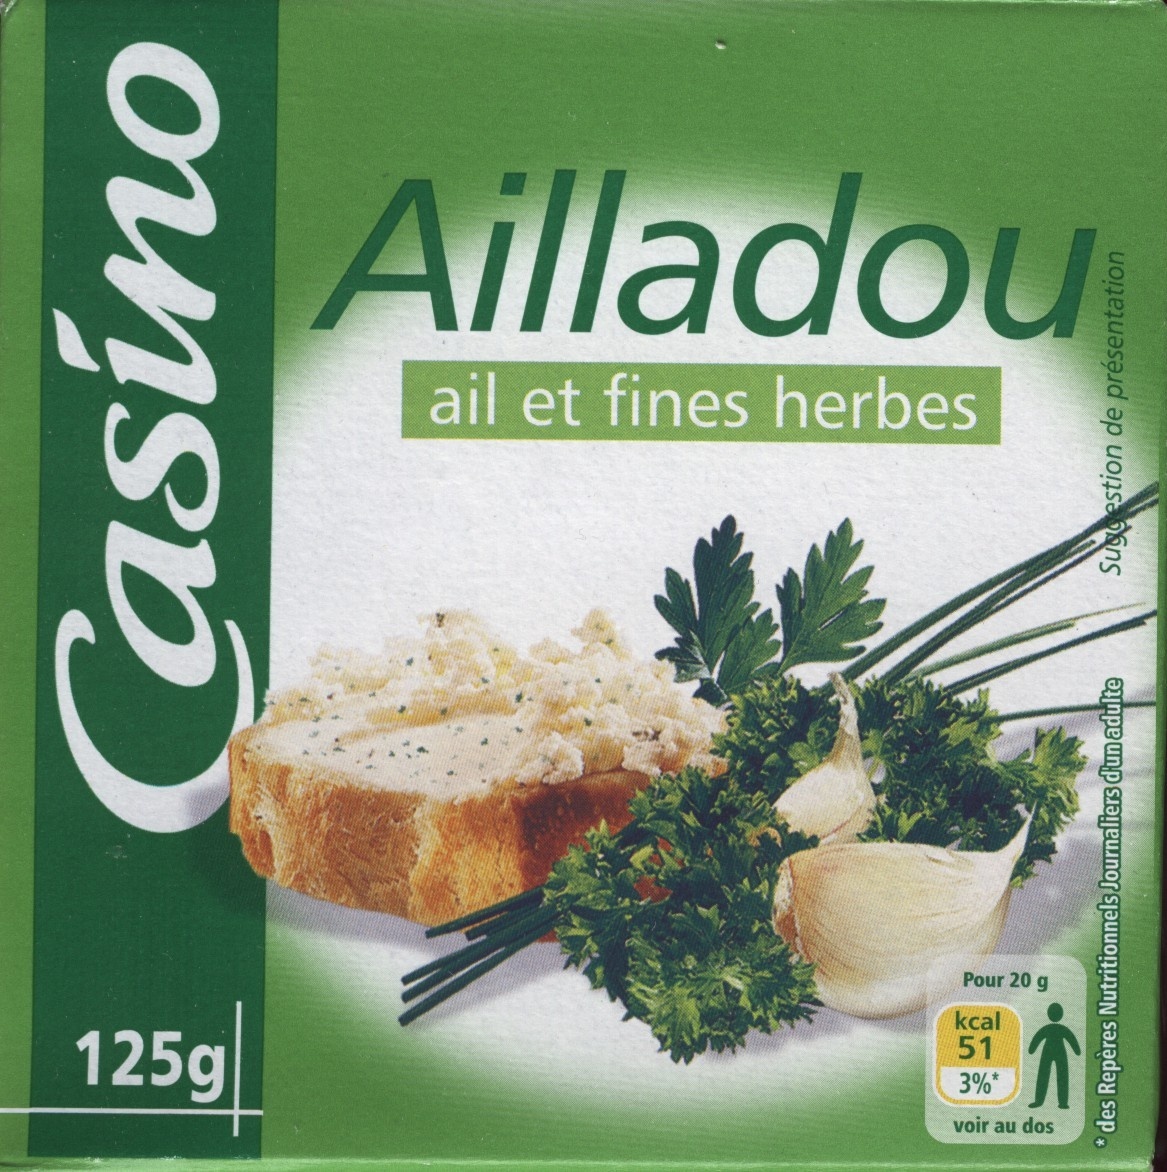 Ailladou Ail et fines herbes - Produit